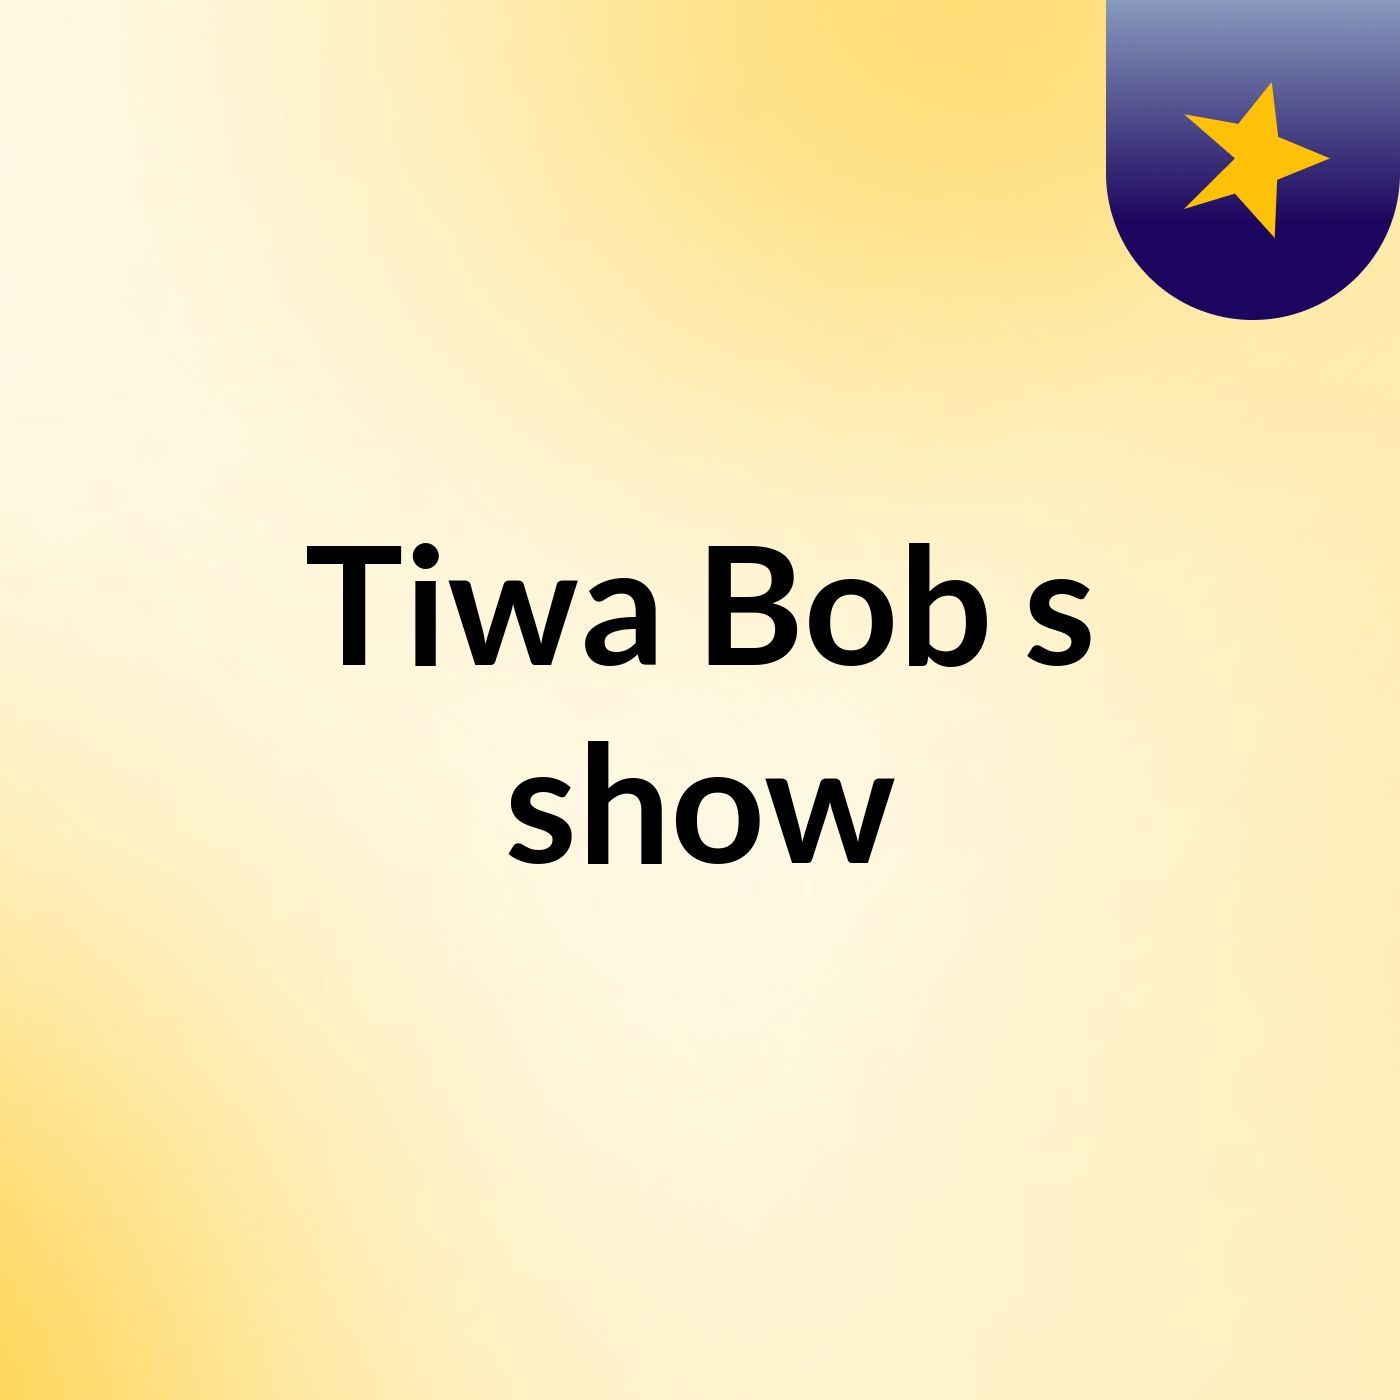 Tiwa Bob's show